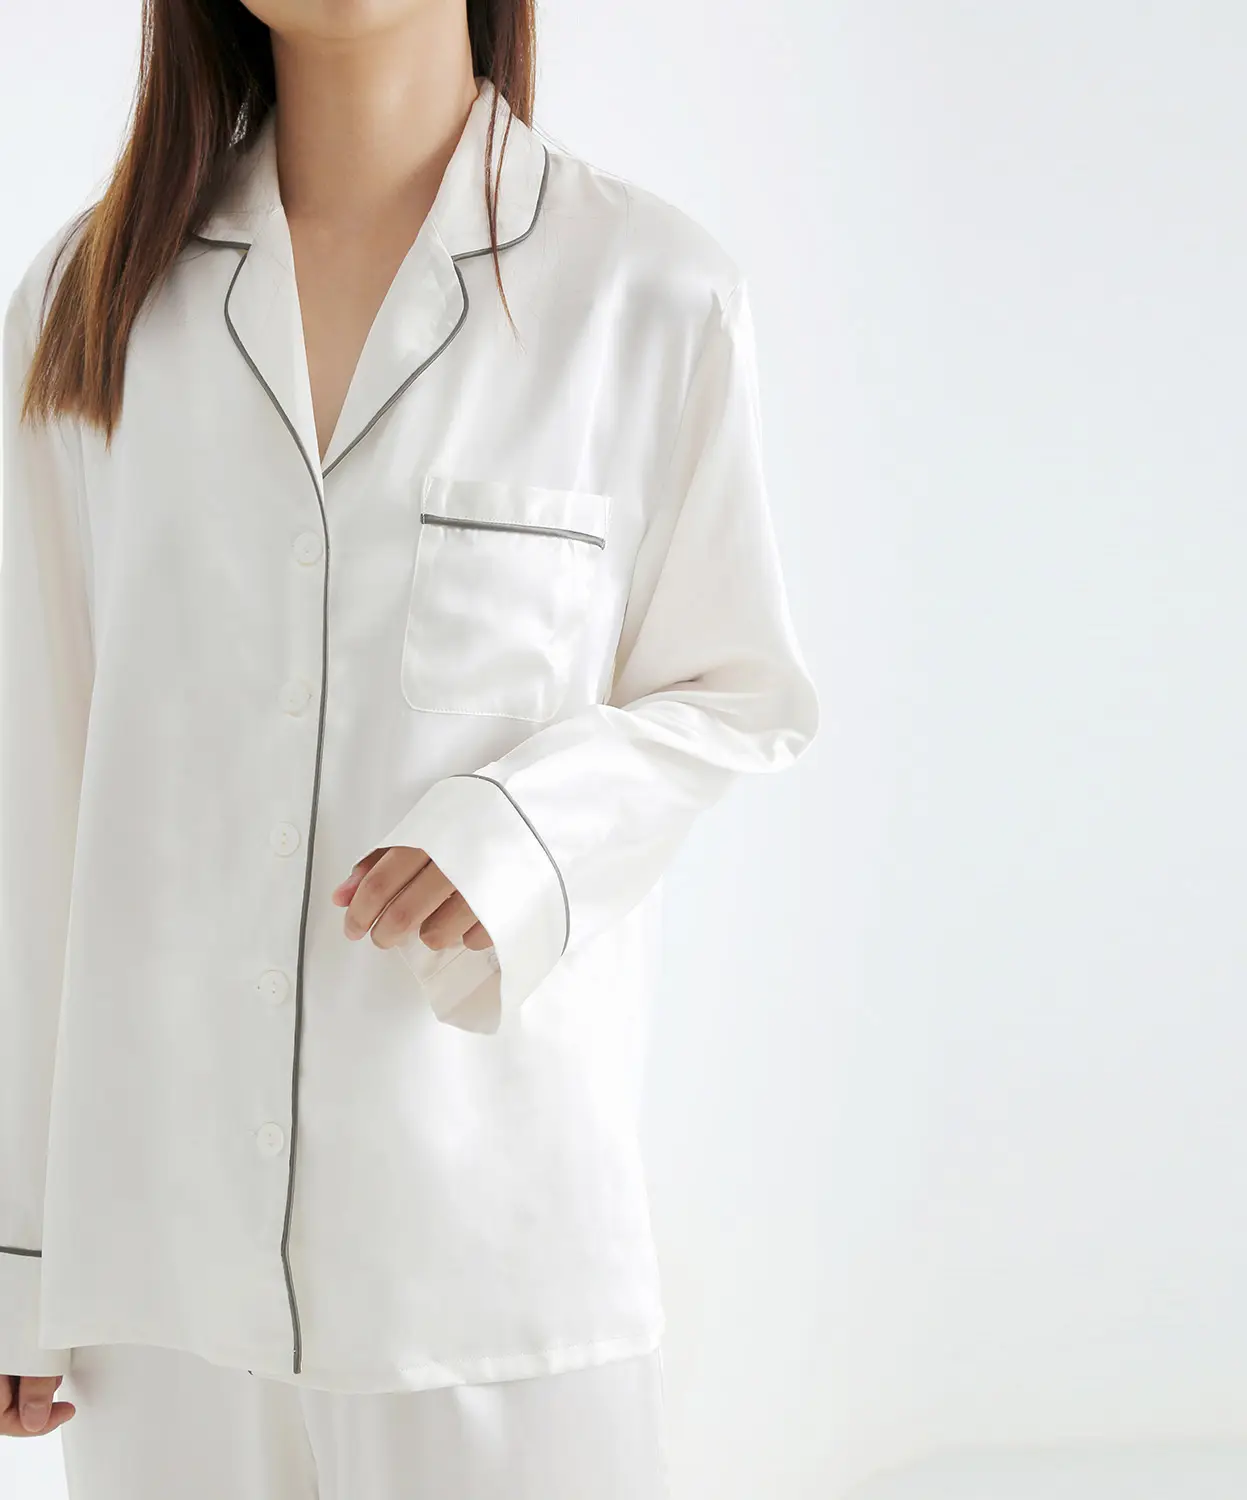 Pijamas de mujer de satén personalizados de alta calidad al por mayor bata de seda manga larga shorrs pijamas de seda vestido de noche de seda blanca